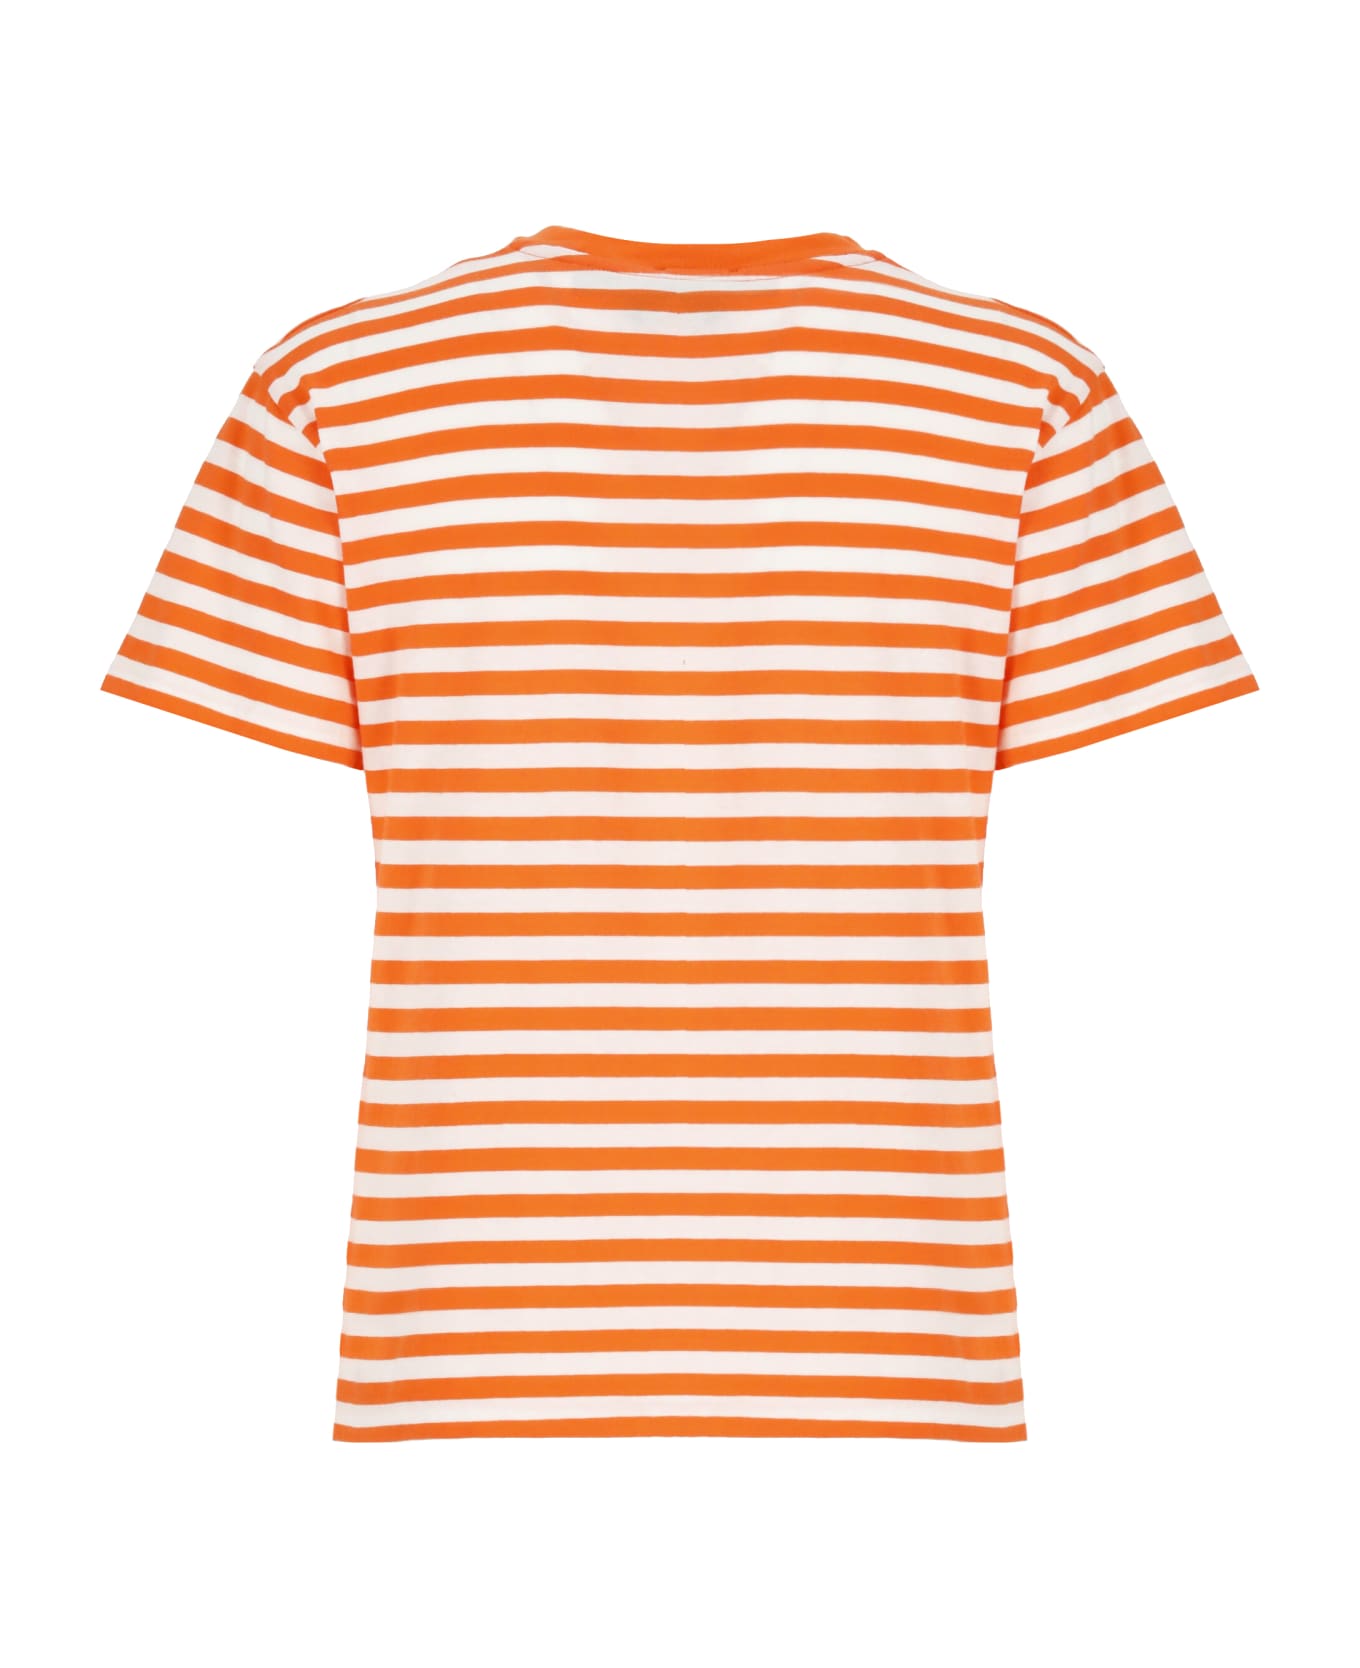 Ralph Lauren Pony T-shirt - Orange Tシャツ